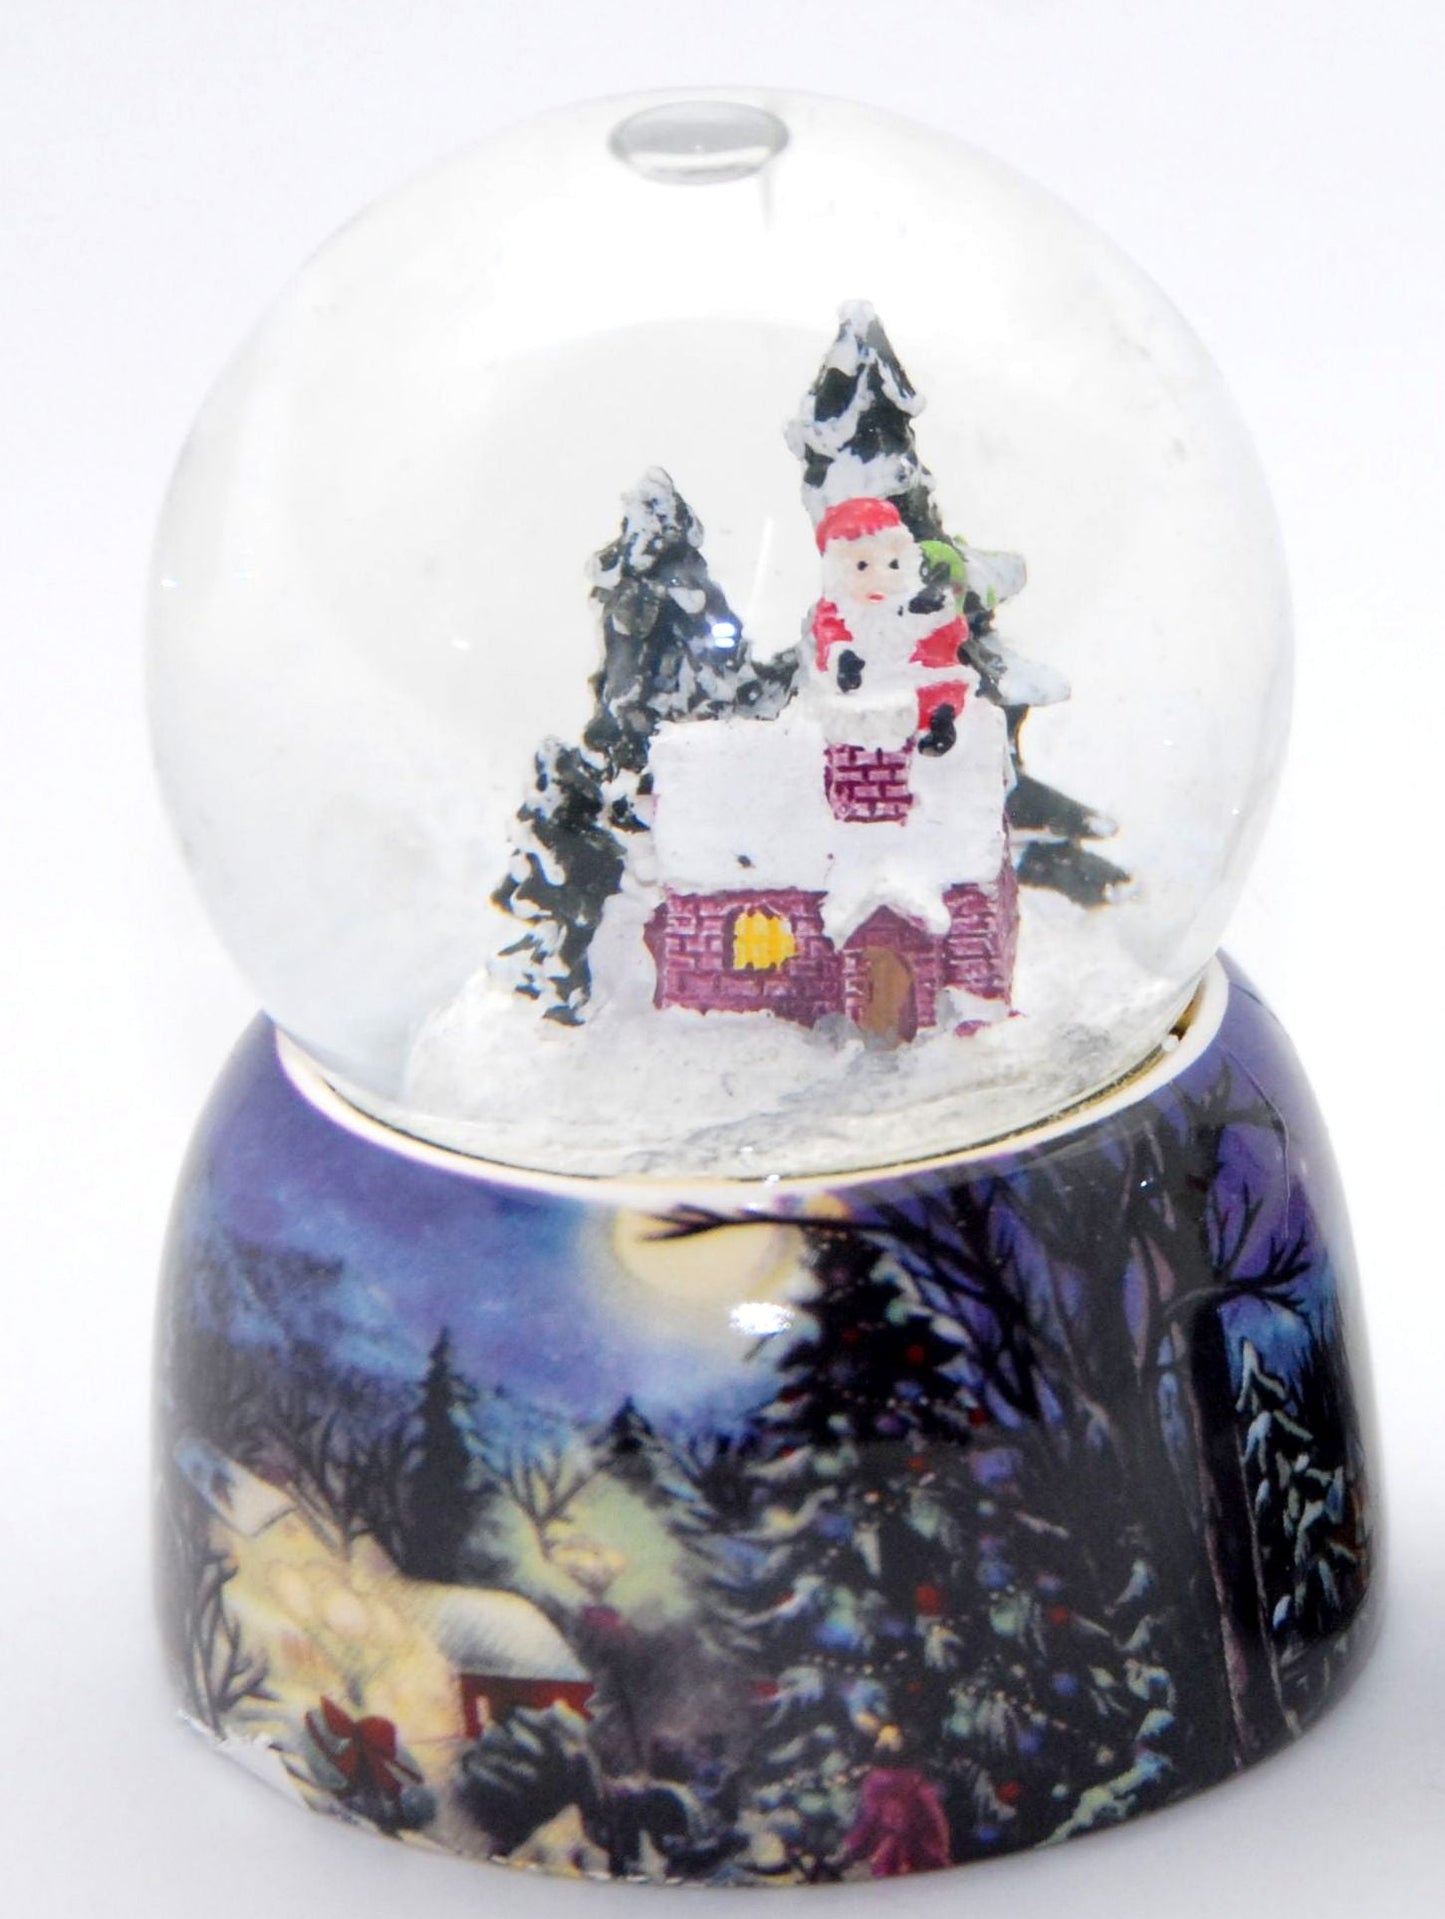 2er-Set Schneekugel Weihnacht Schneemann auf nostalgischem Sockel mit Geschenk und Winterhütte 65mm Durchmesser - Luftblase - Schneekugelhaus